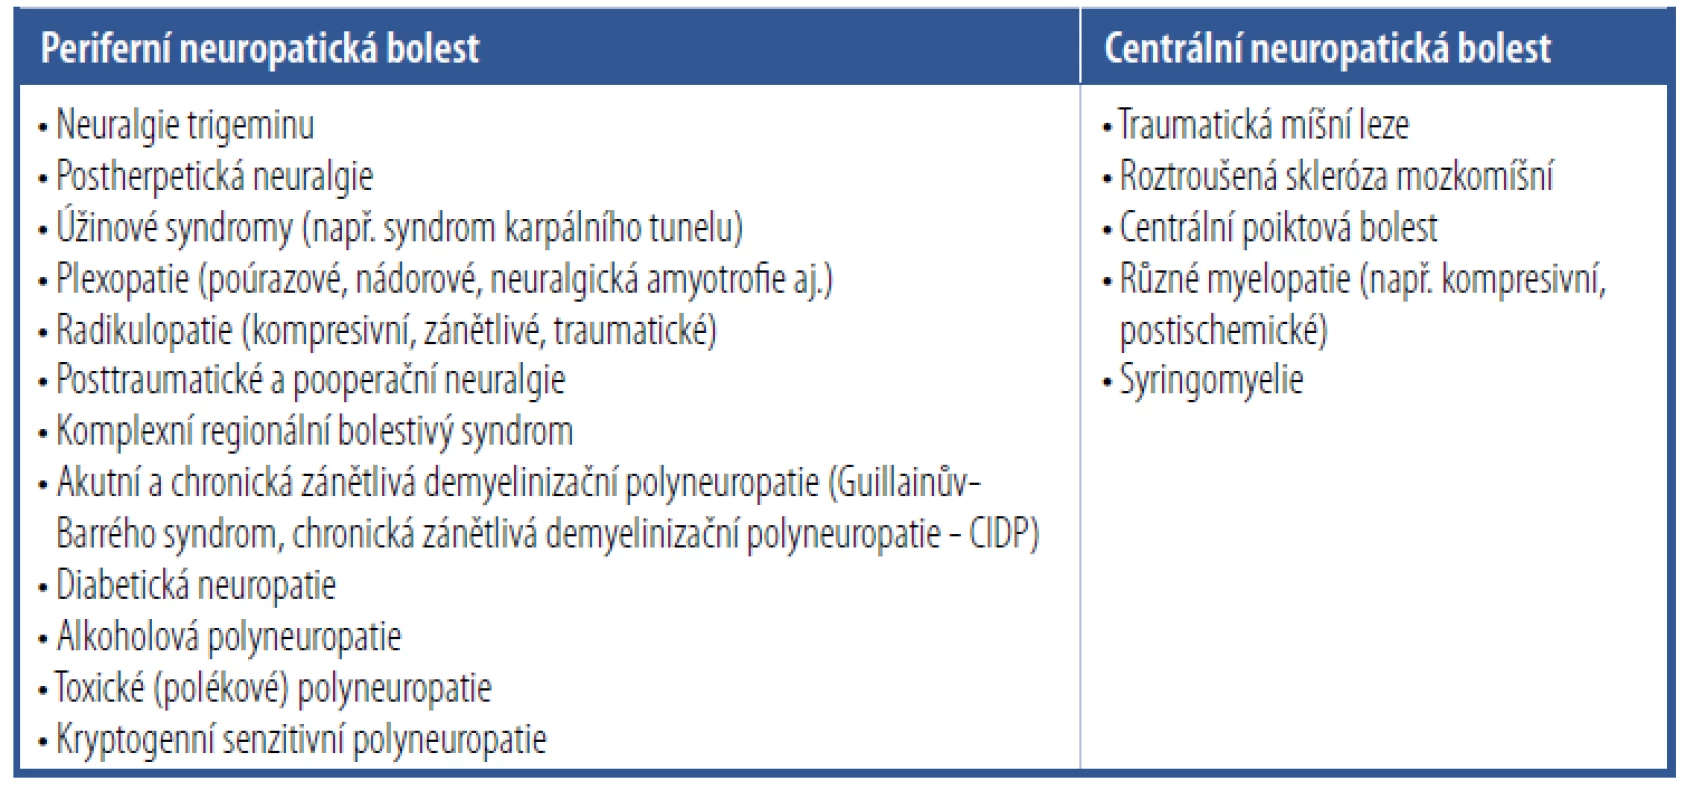 Hlavní příčiny neuropatické bolesti [Upraveno podle Ambler Z. Neuropatická bolest –
hlavní příčiny a terapie, 2011.]